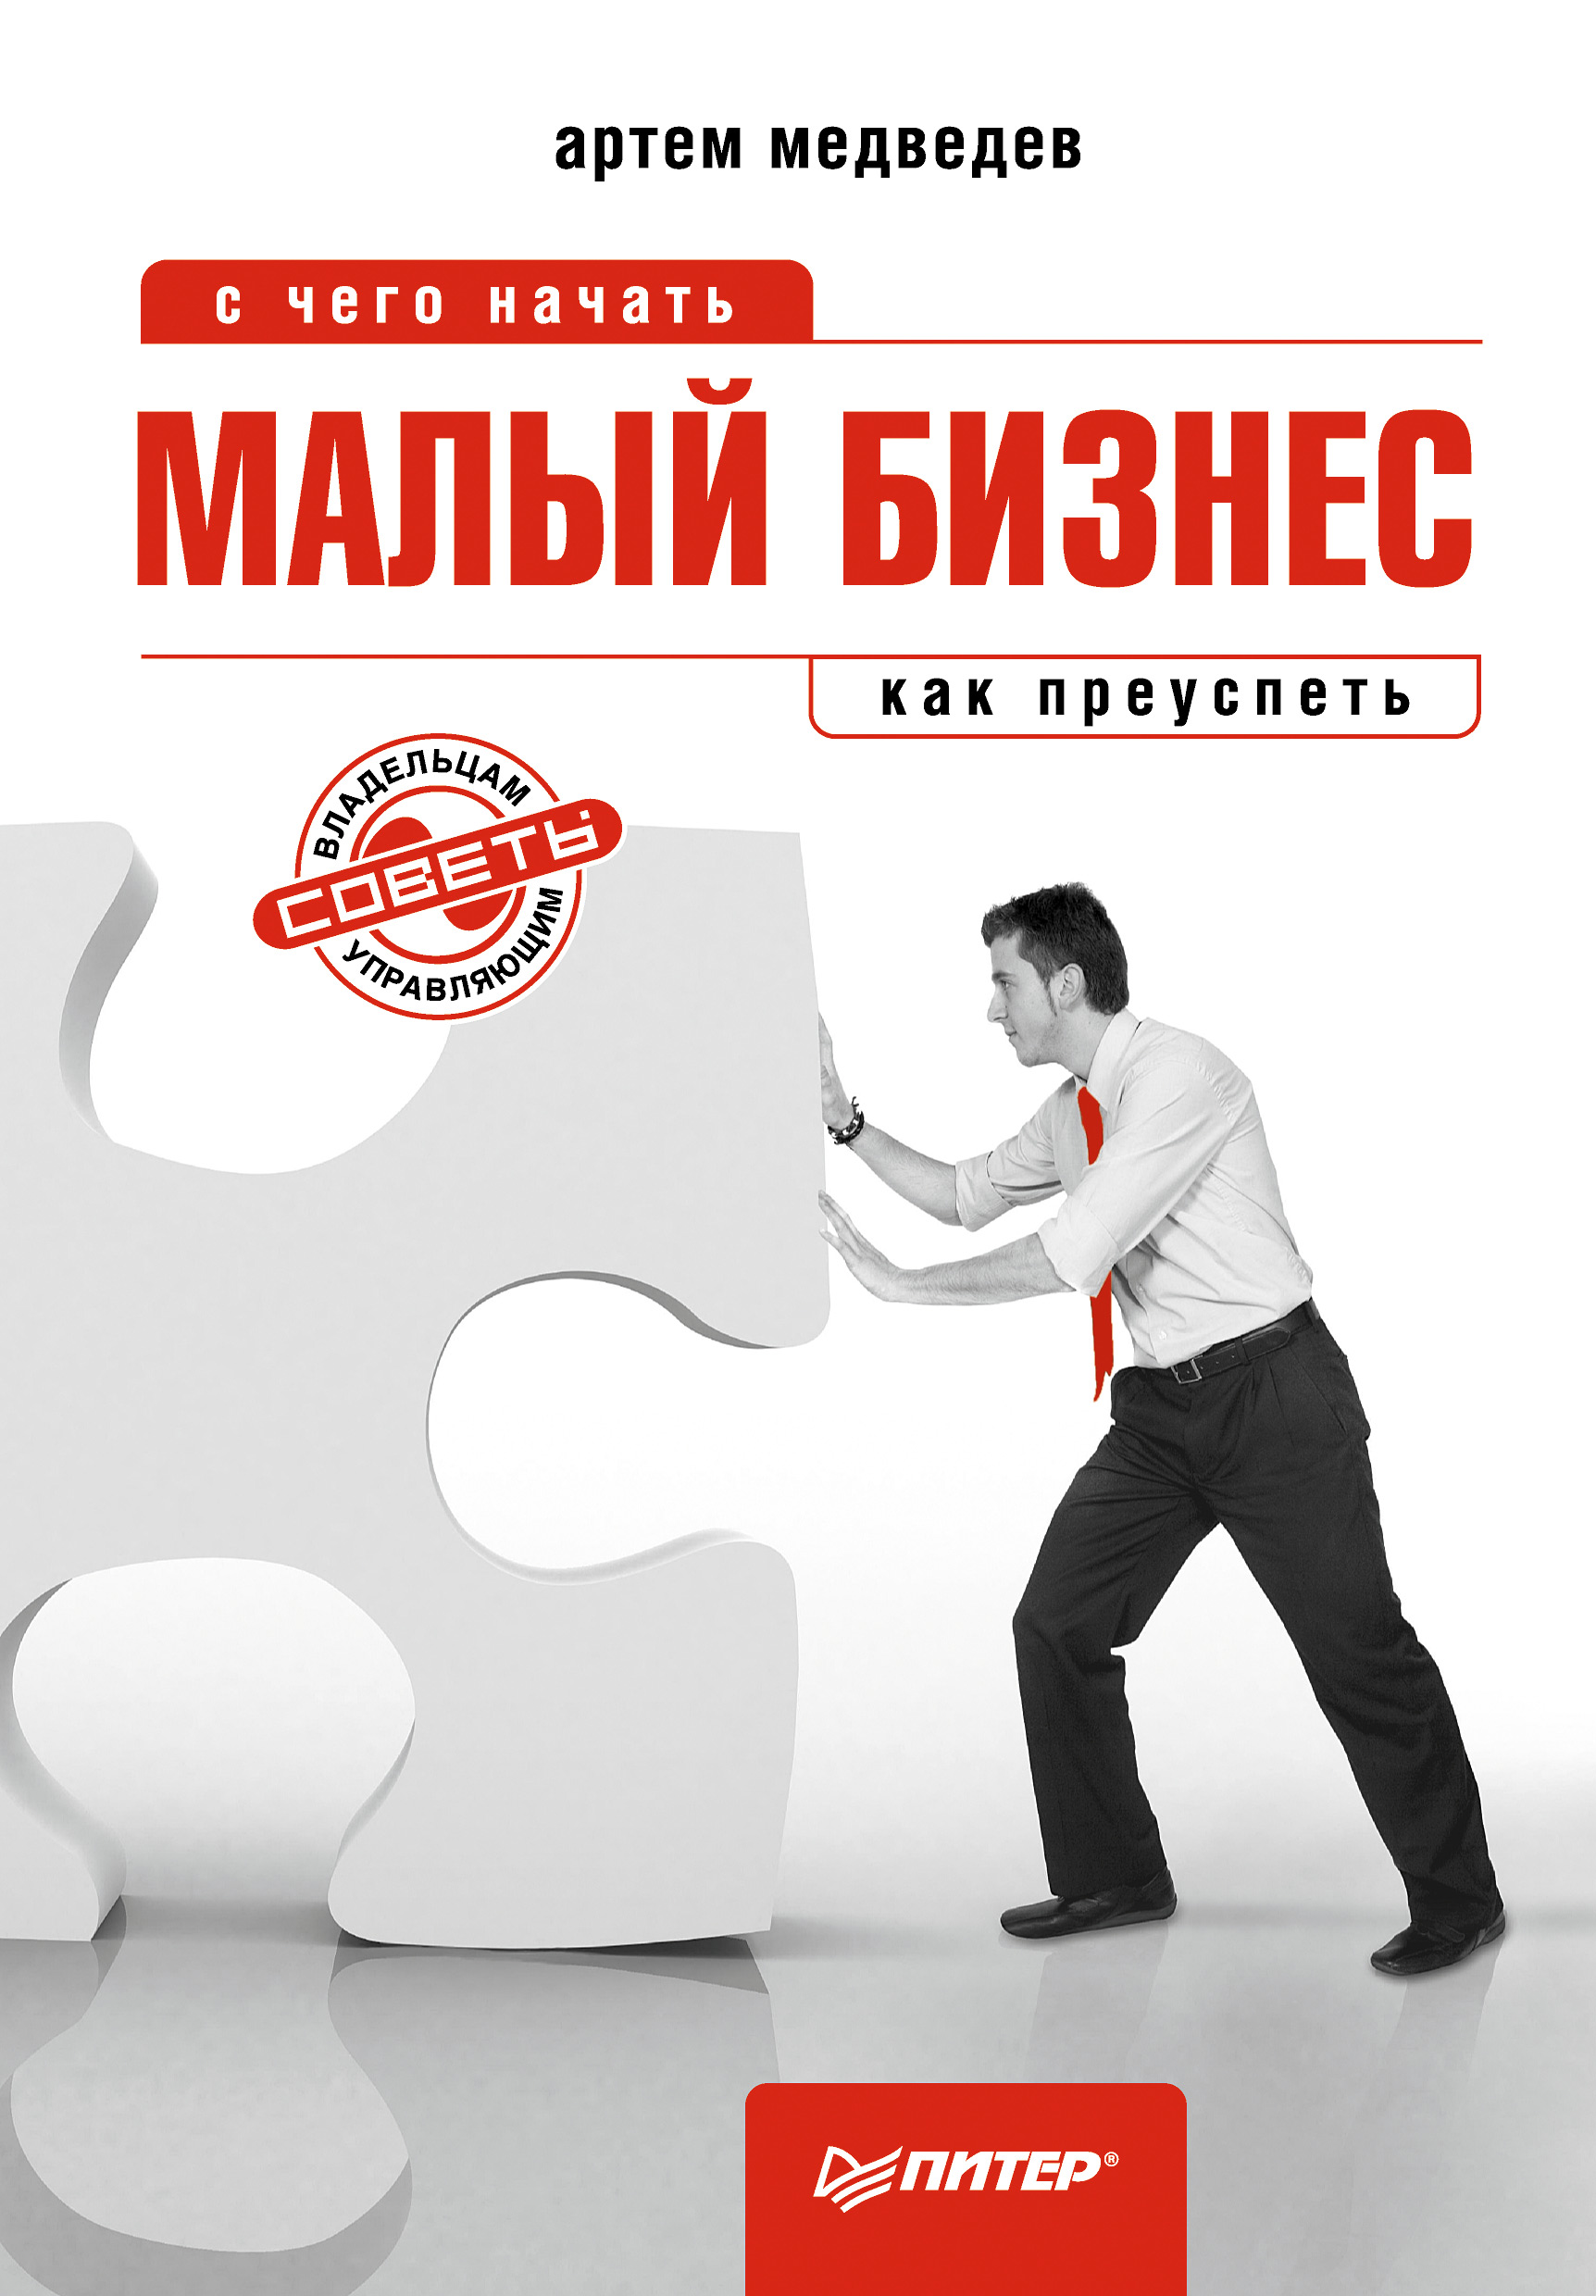 Книга  Малый бизнес: с чего начать, как преуспеть созданная Артем Медведев может относится к жанру малый и средний бизнес. Стоимость электронной книги Малый бизнес: с чего начать, как преуспеть с идентификатором 427962 составляет 189.00 руб.